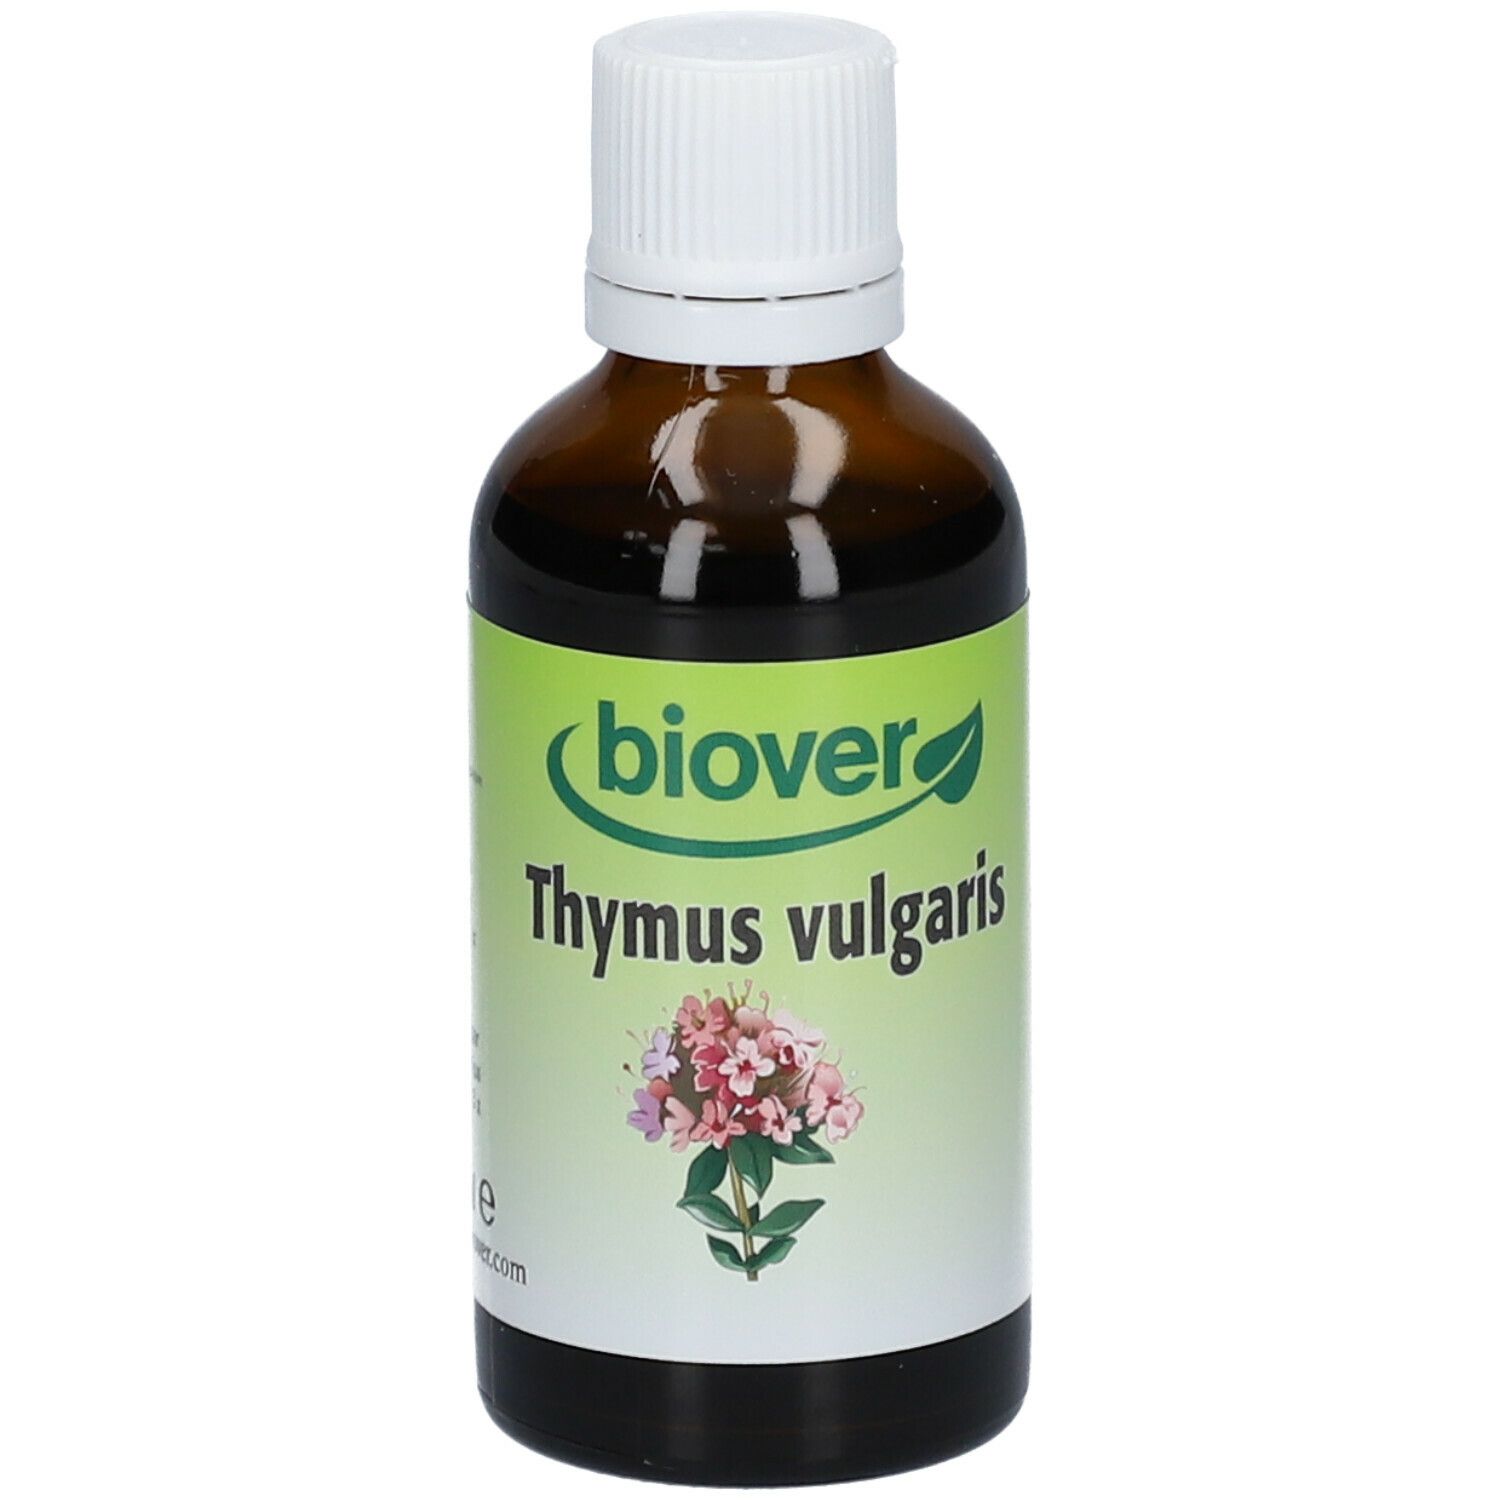 Image of biover Thymus vulgaris